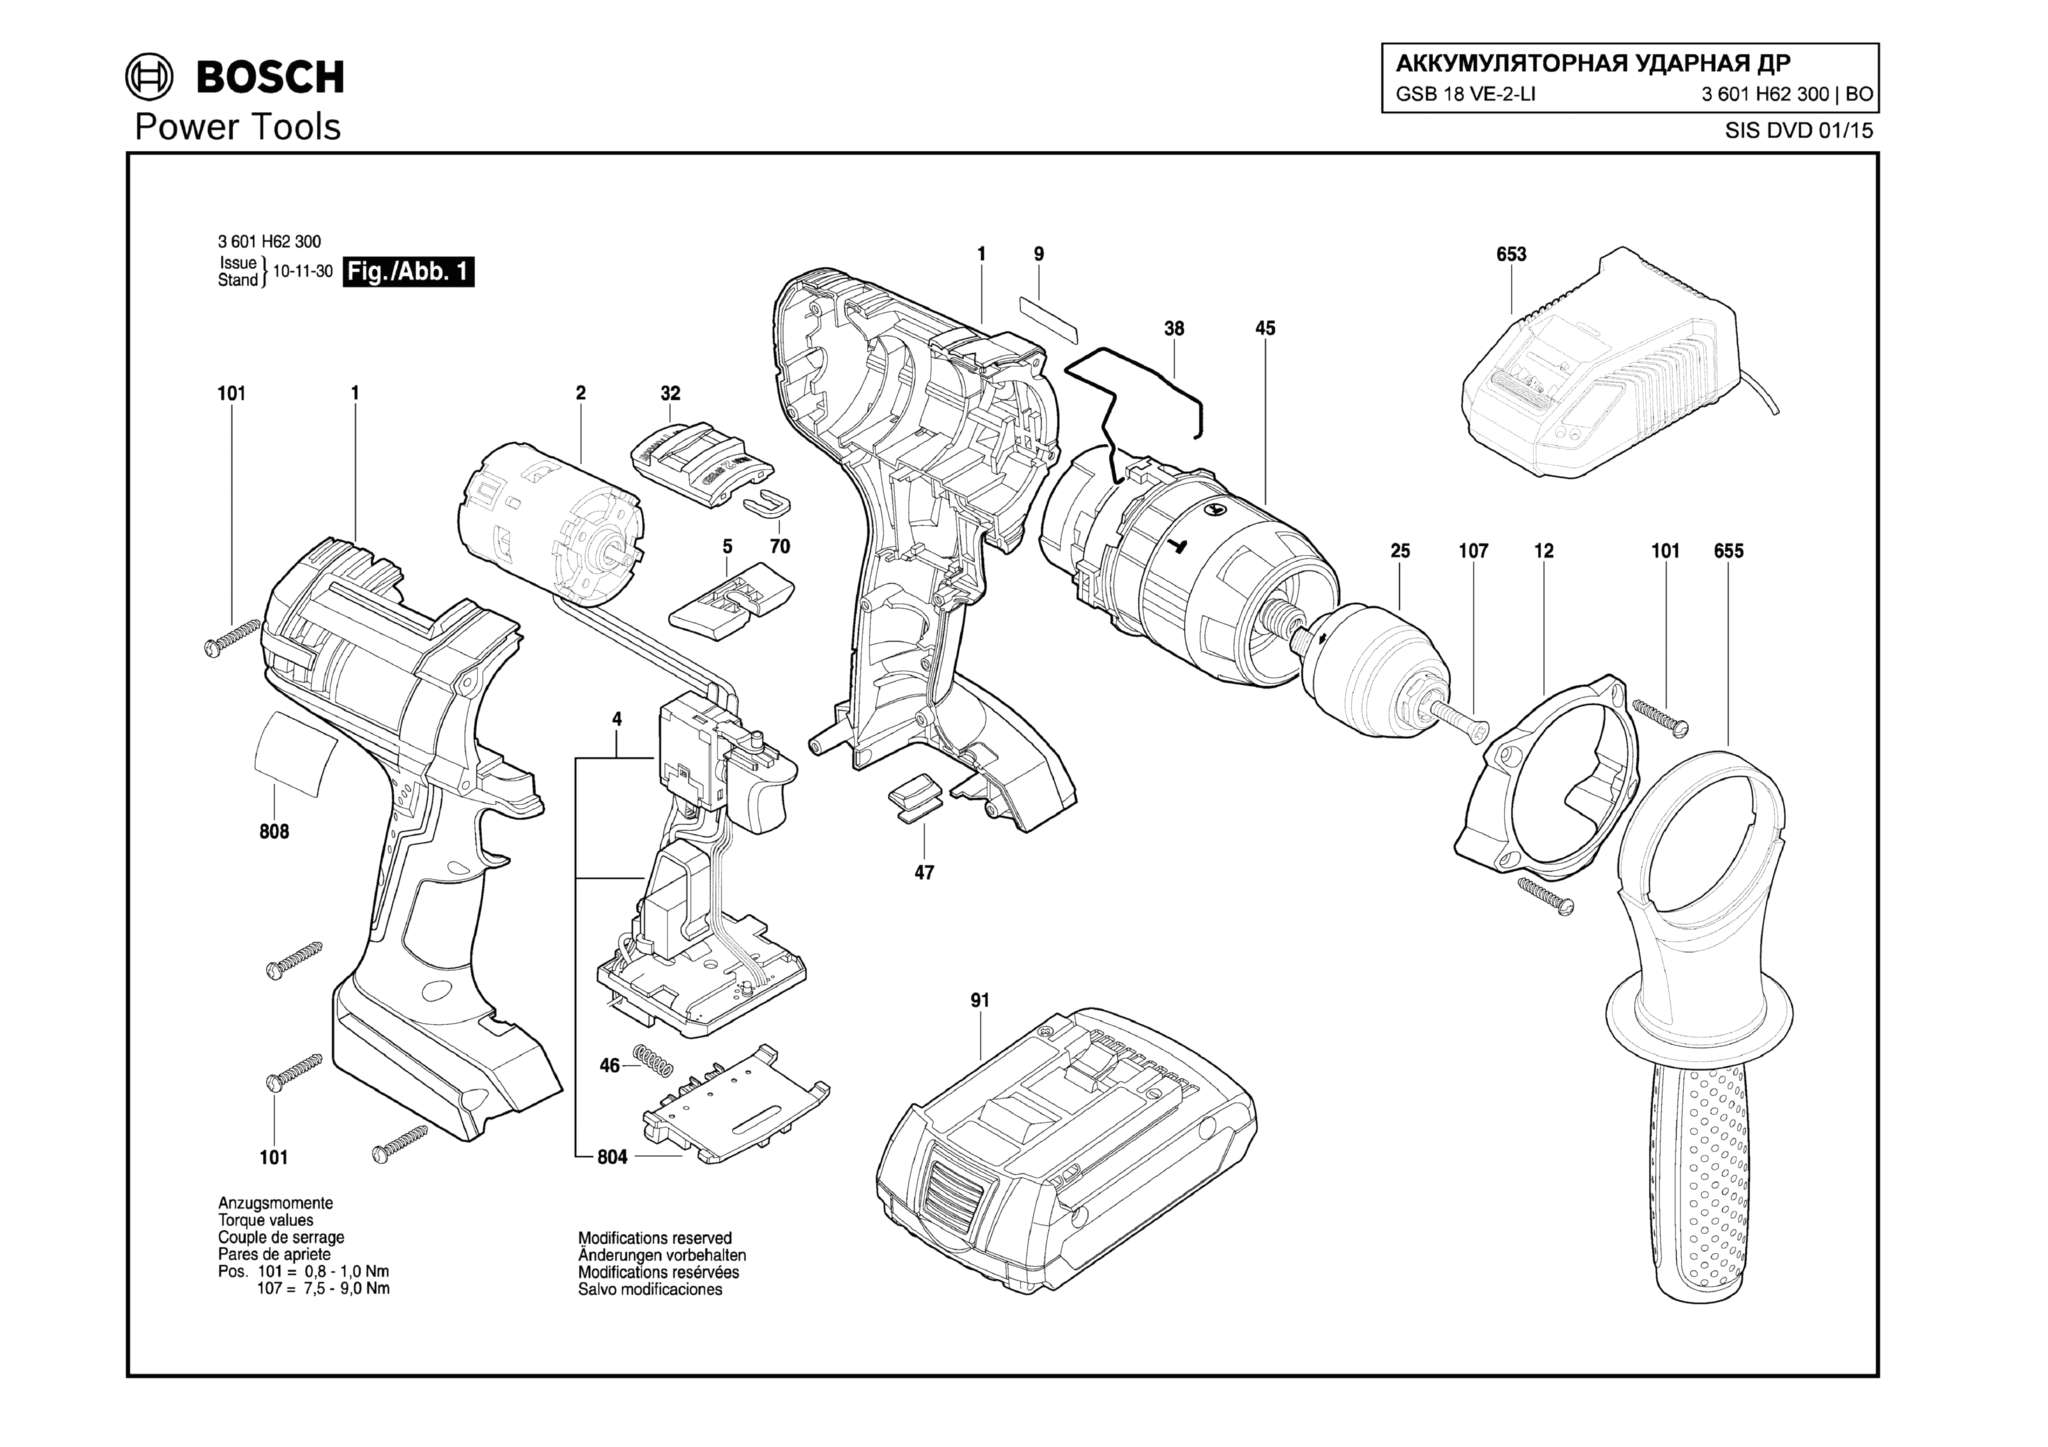 Запчасти, схема и деталировка Bosch GSB 18 VE-2-LI (ТИП 3601H62300)